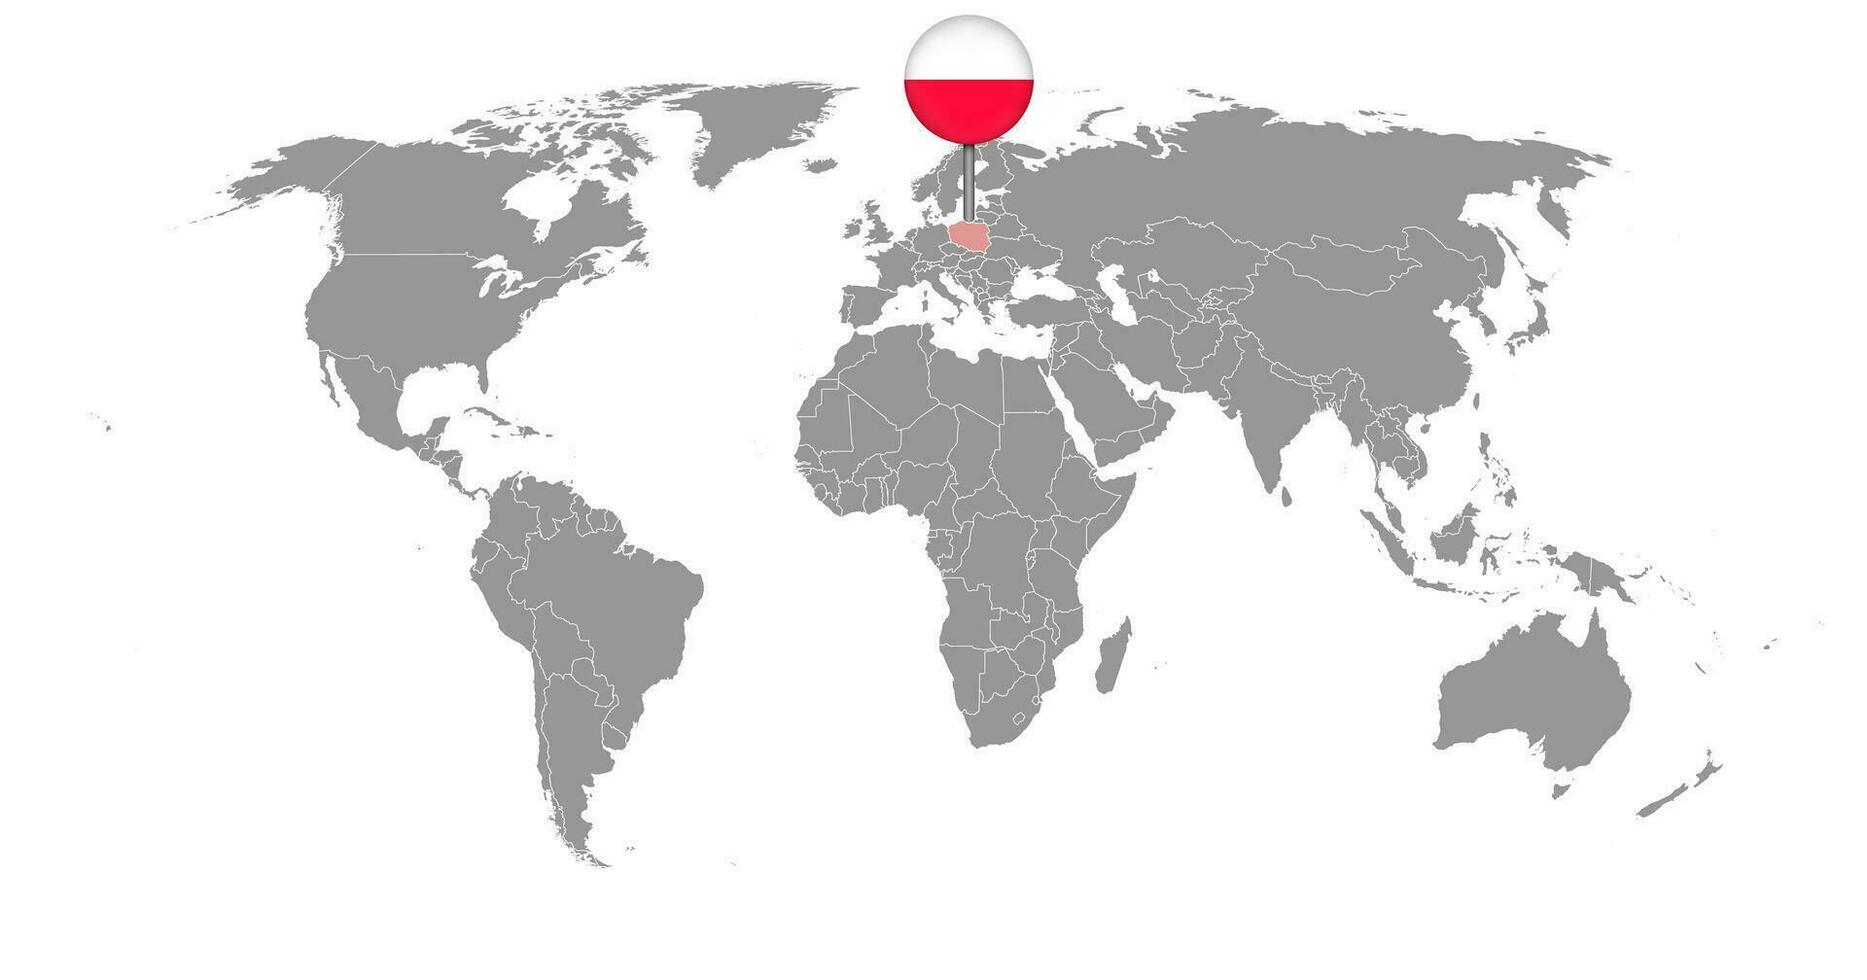 nålkarta med polska flaggan på världskartan. vektor illustration.